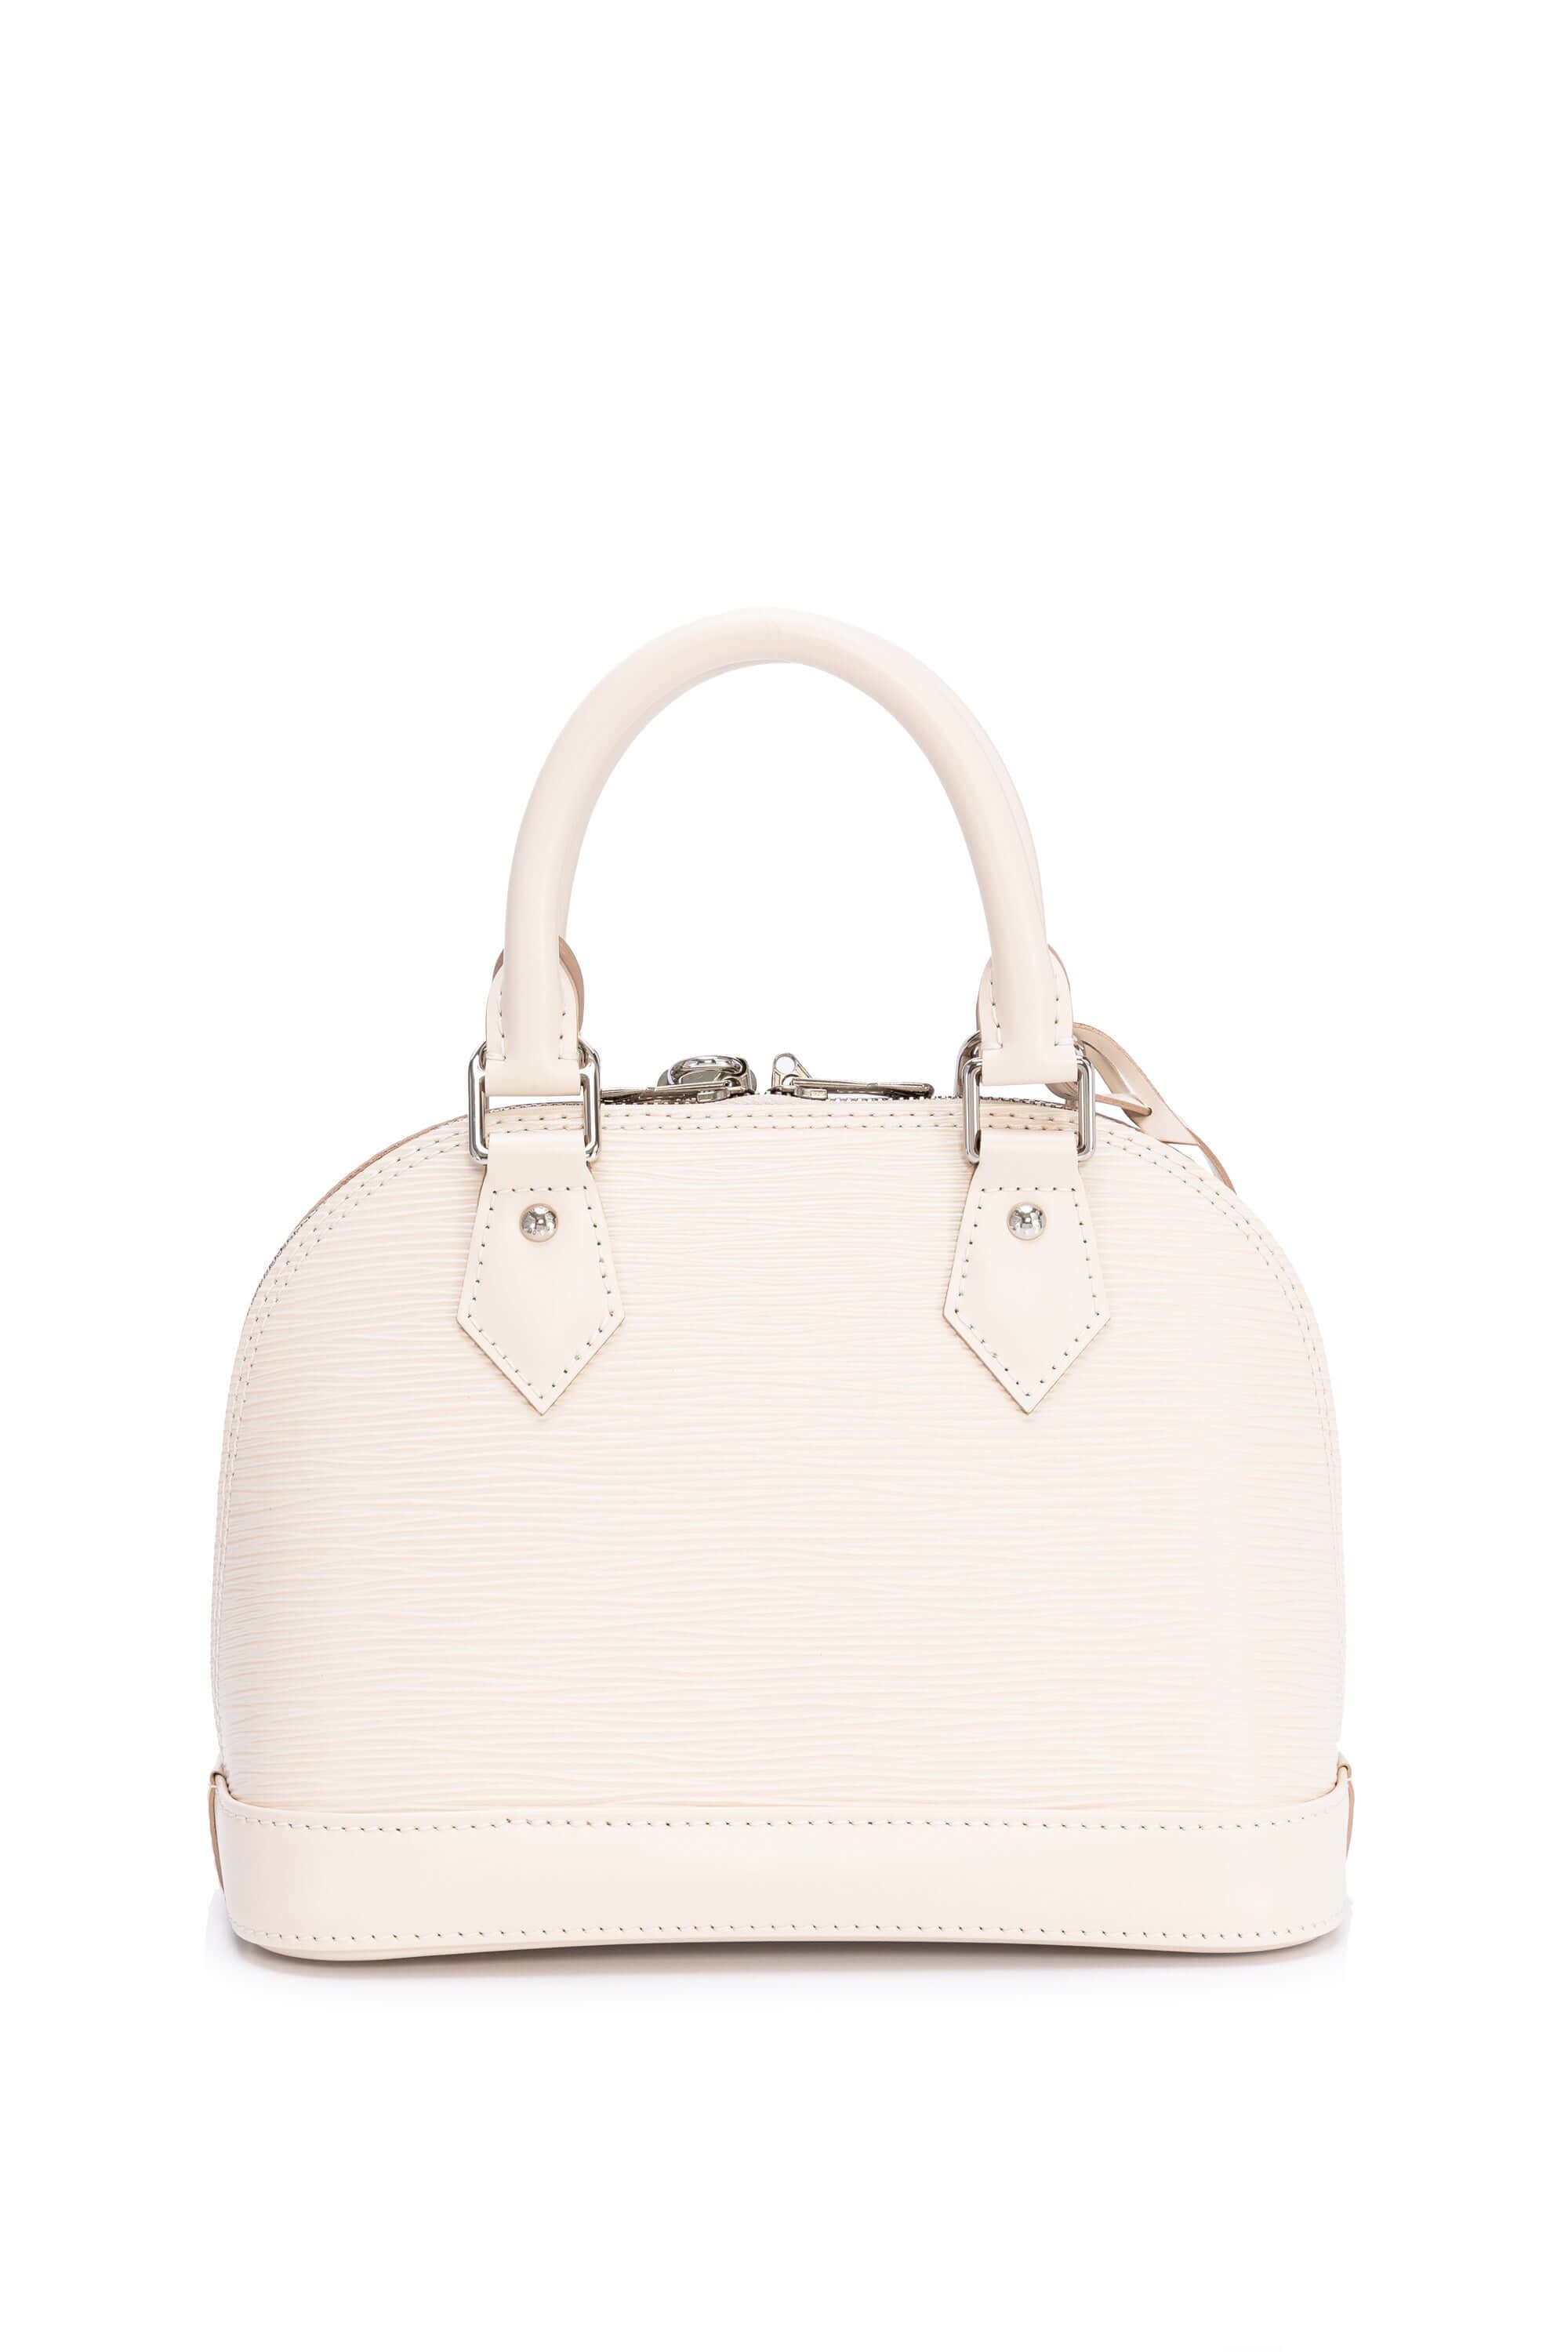 Alma bb leather handbag Louis Vuitton White in Leather - 22531440